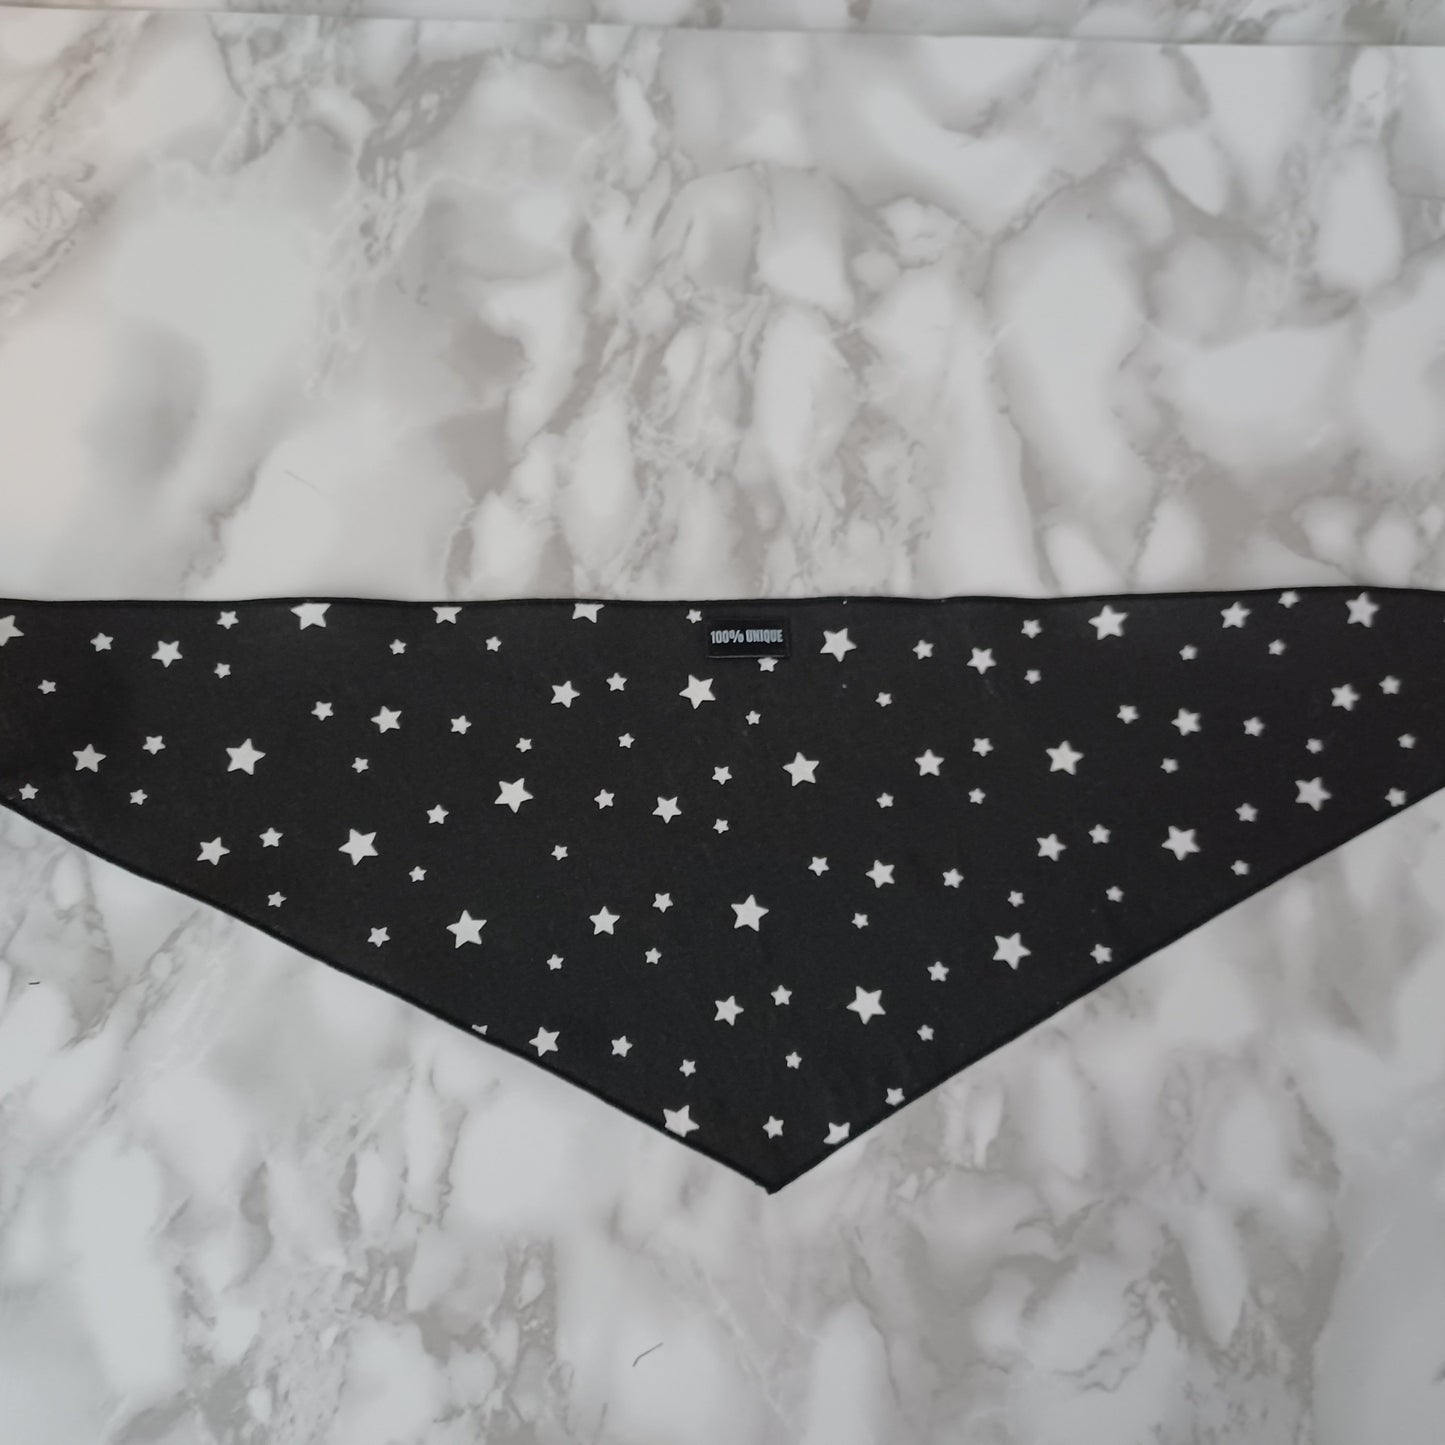 Modèle A- Chat et chien-Foulard noir avec étoiles blanches/Bandana black with white stars